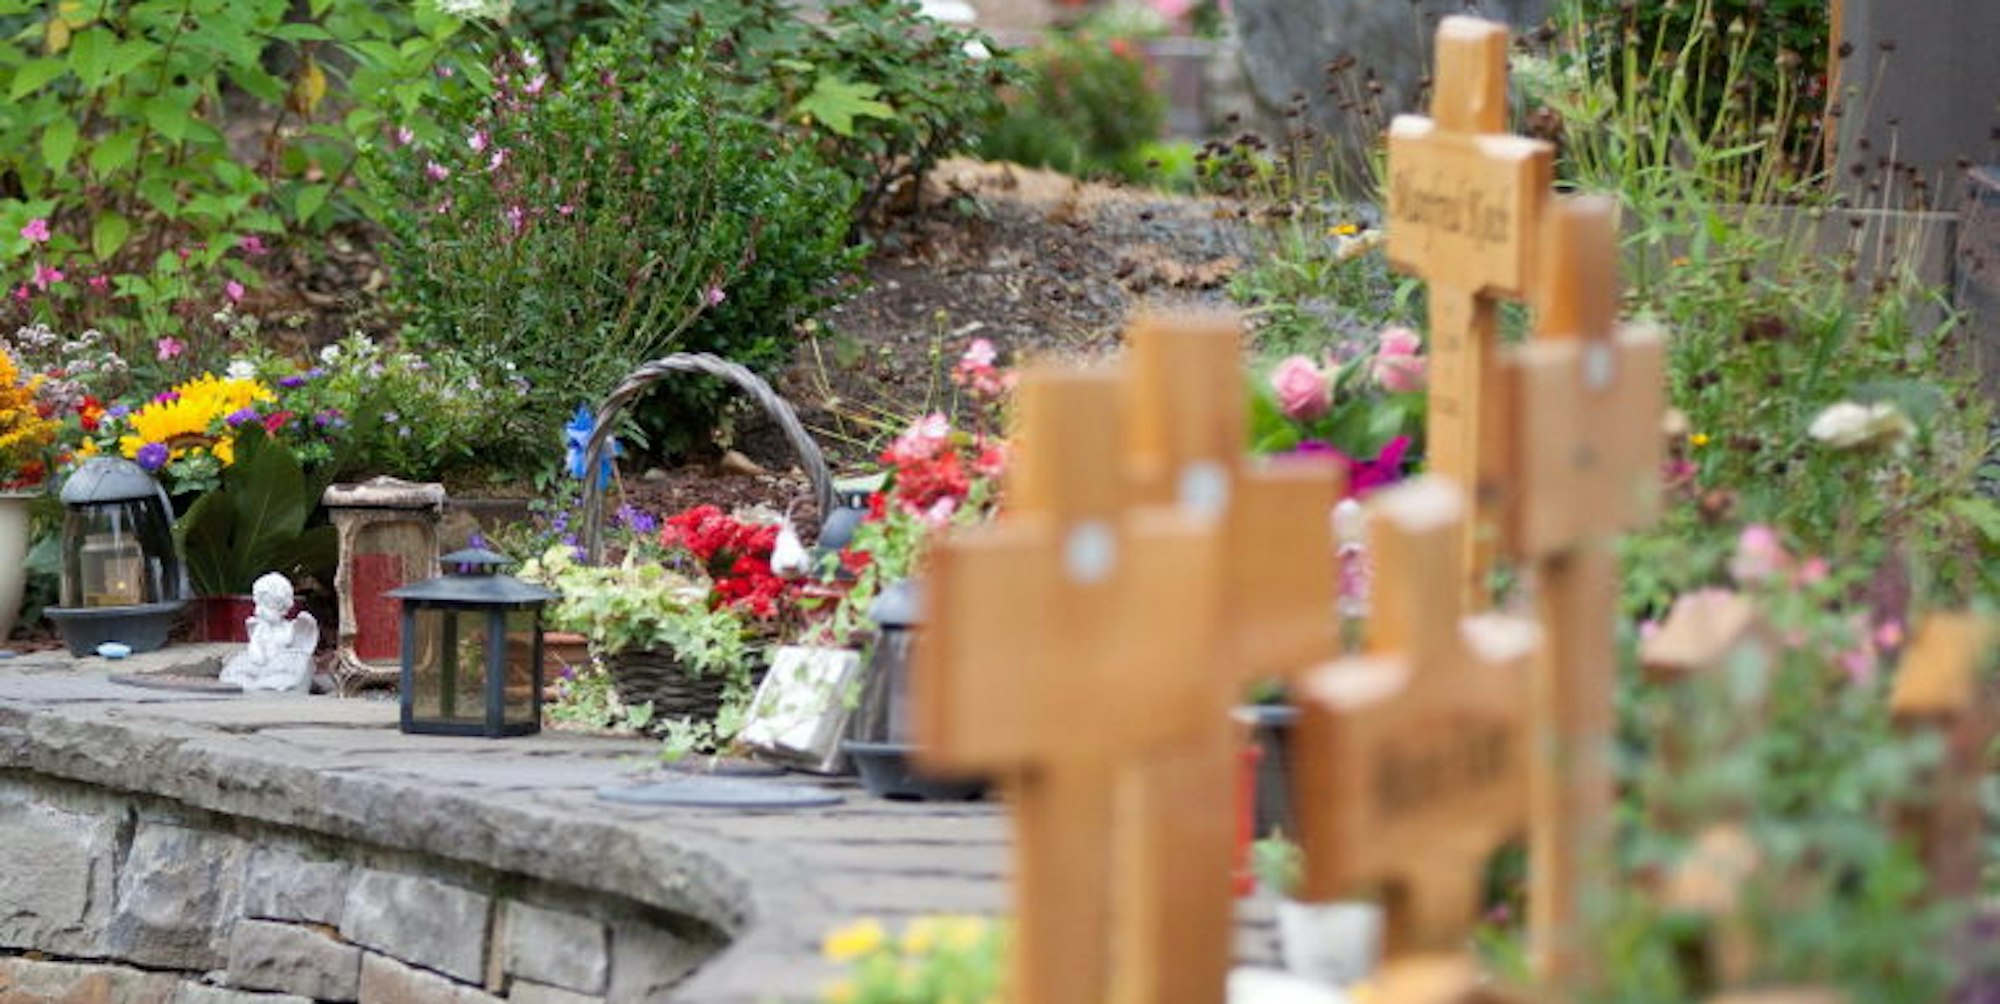 Immer mehr Urnengräber gibt es auch auf dem Friedhof in Lindlar. Doch der Grabschmuck widerspricht der Friedhofssatzung.